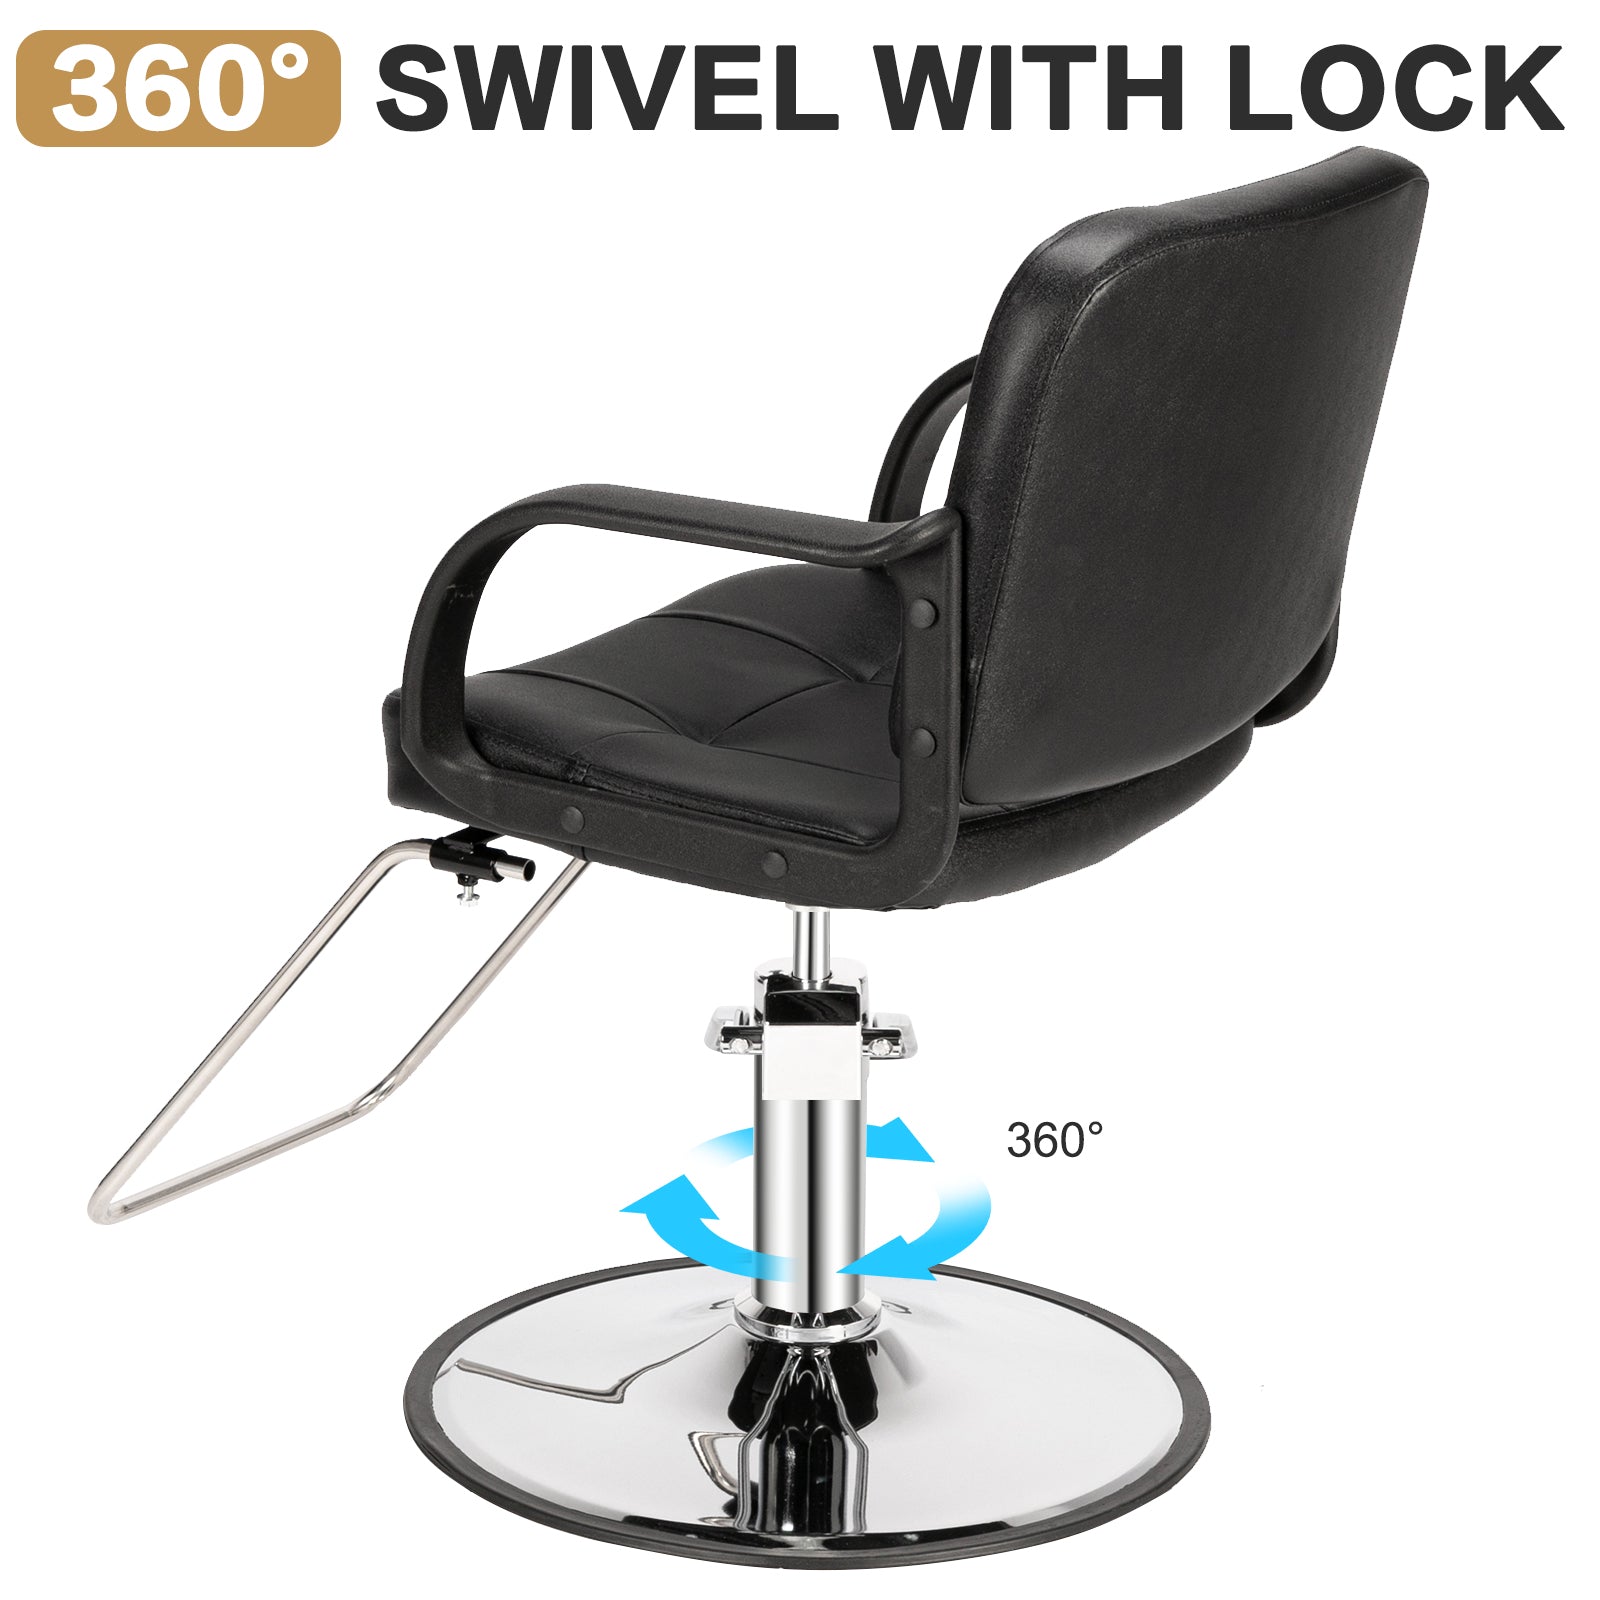 OmySalon Hydraulic Barber Chair Heavy Duty Styling Chair Salon Chair Black